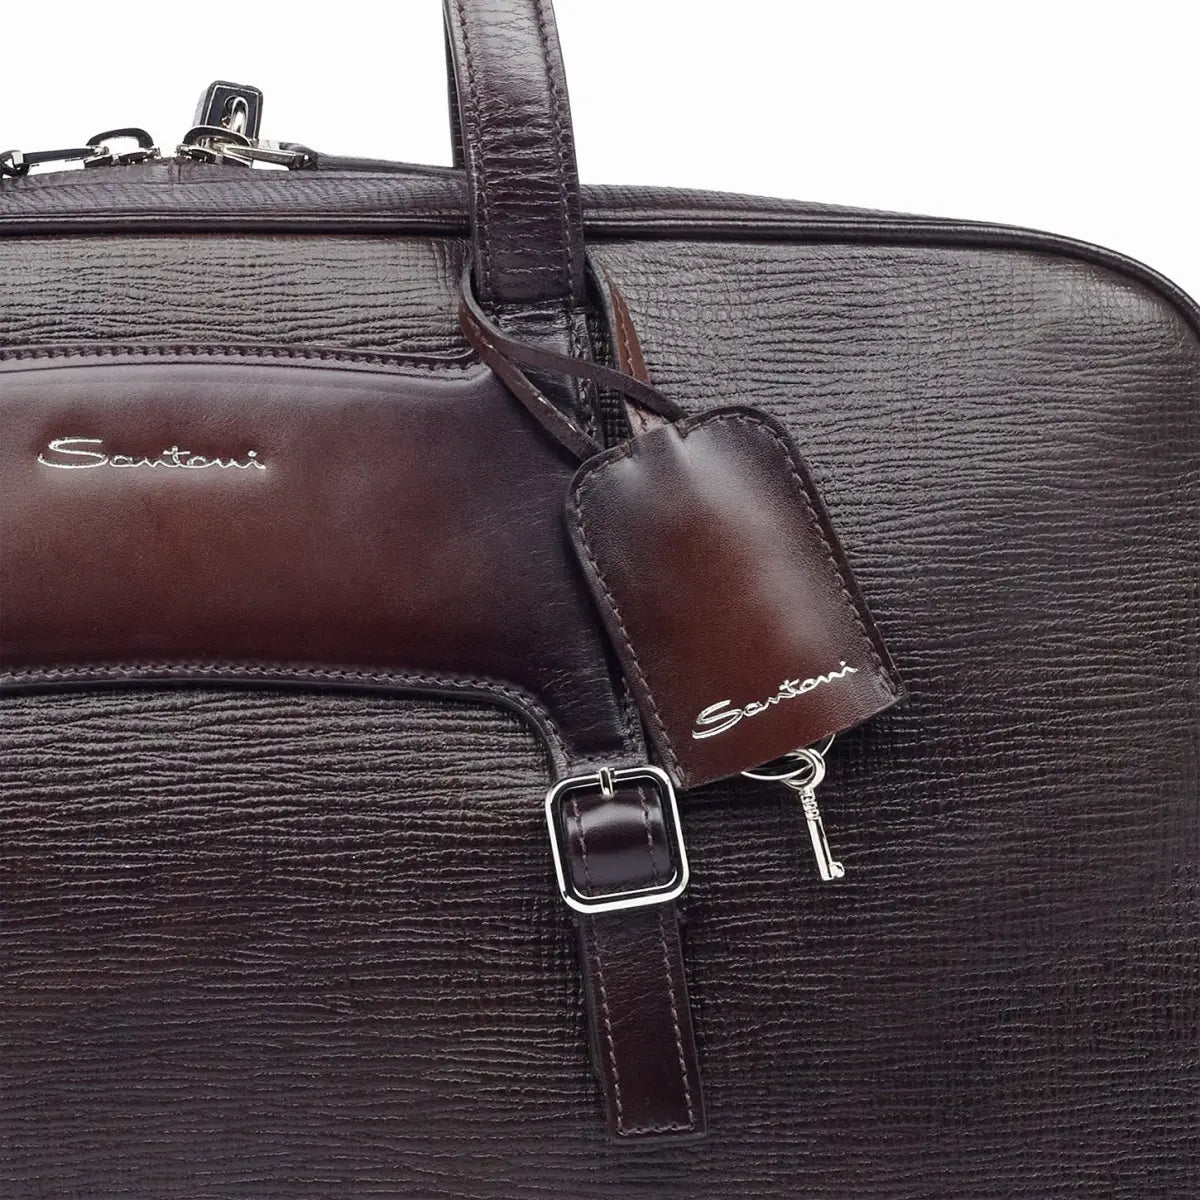 Brown Embossed Leather Weekend Bag